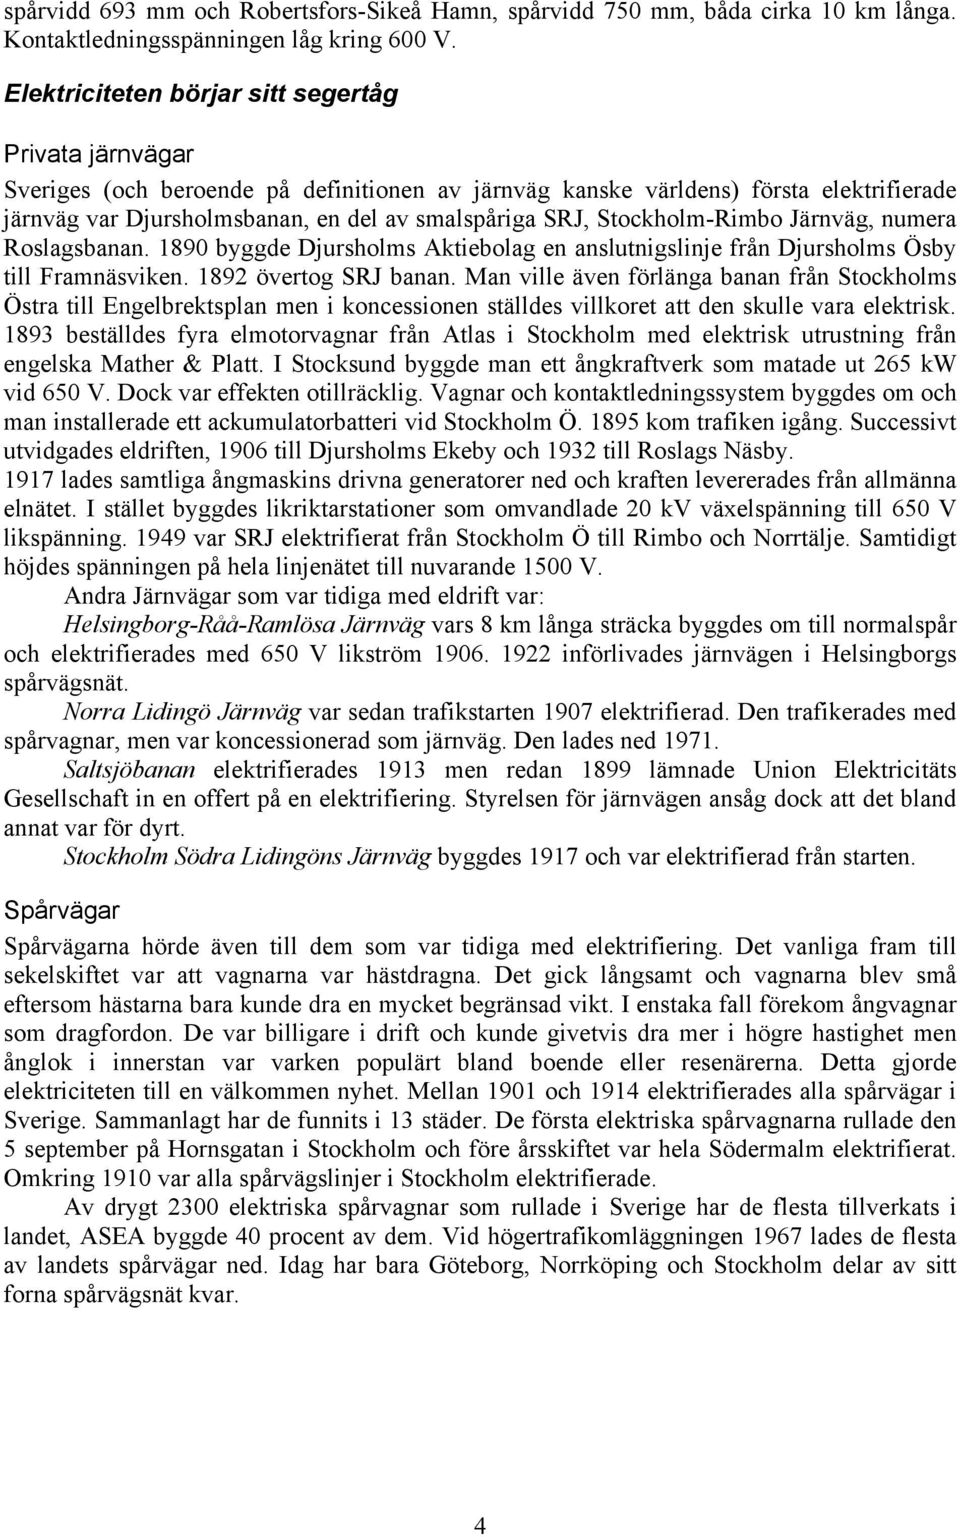 Stockholm-Rimbo Järnväg, numera Roslagsbanan. 1890 byggde Djursholms Aktiebolag en anslutnigslinje från Djursholms Ösby till Framnäsviken. 1892 övertog SRJ banan.